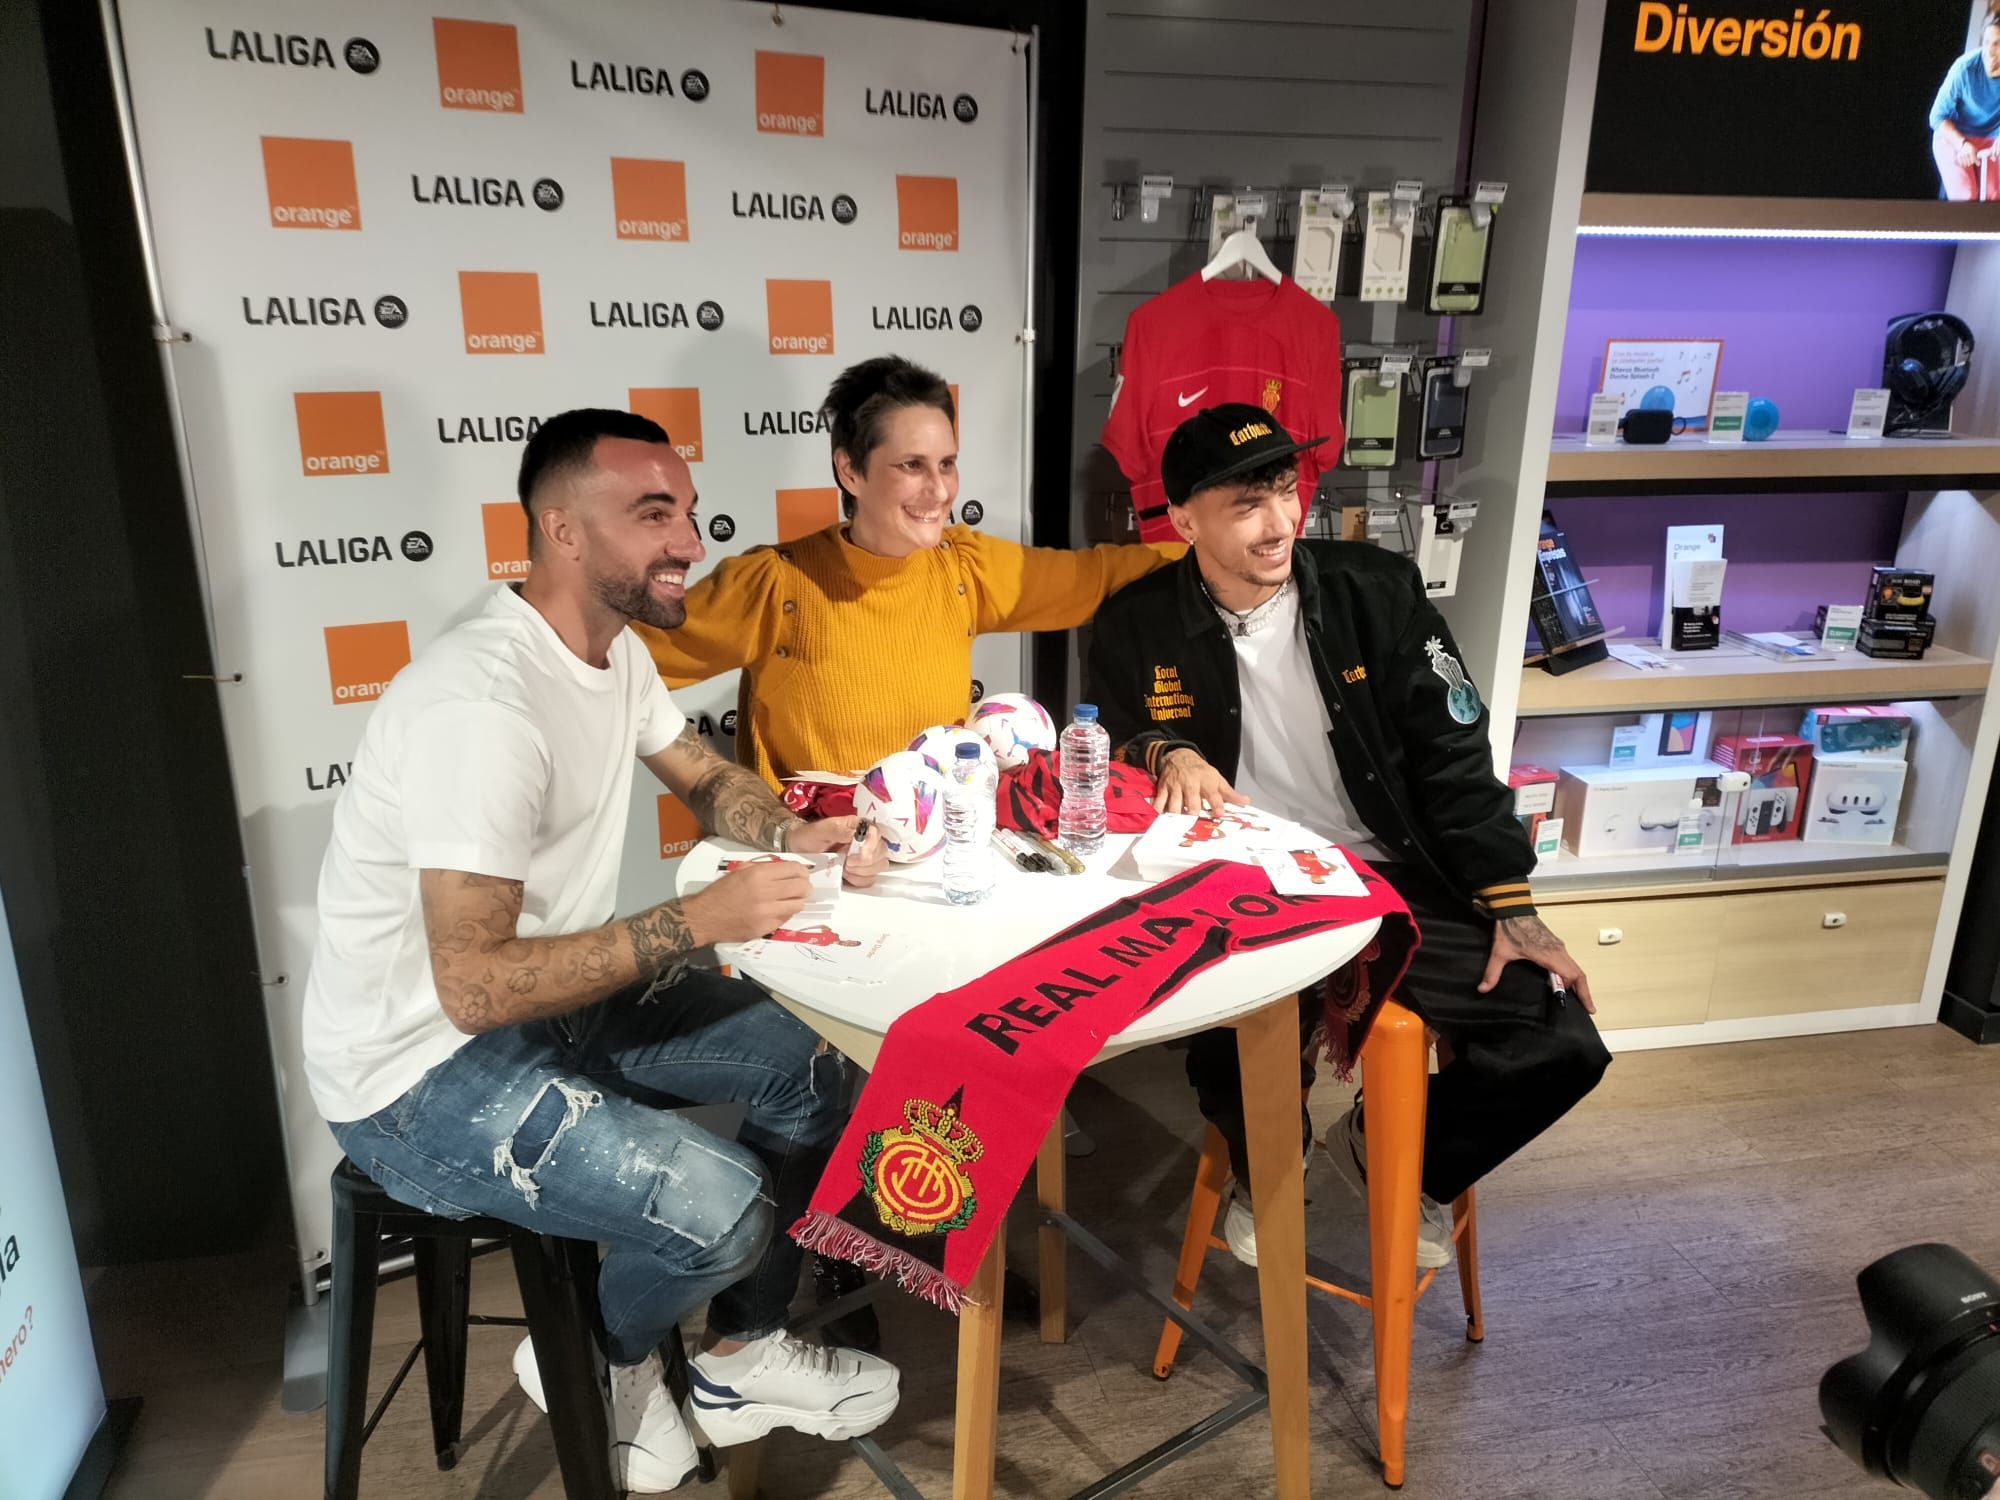 Firma de autógrafos de Sergi Darder y Antonio Sánchez, jugadores del Mallorca